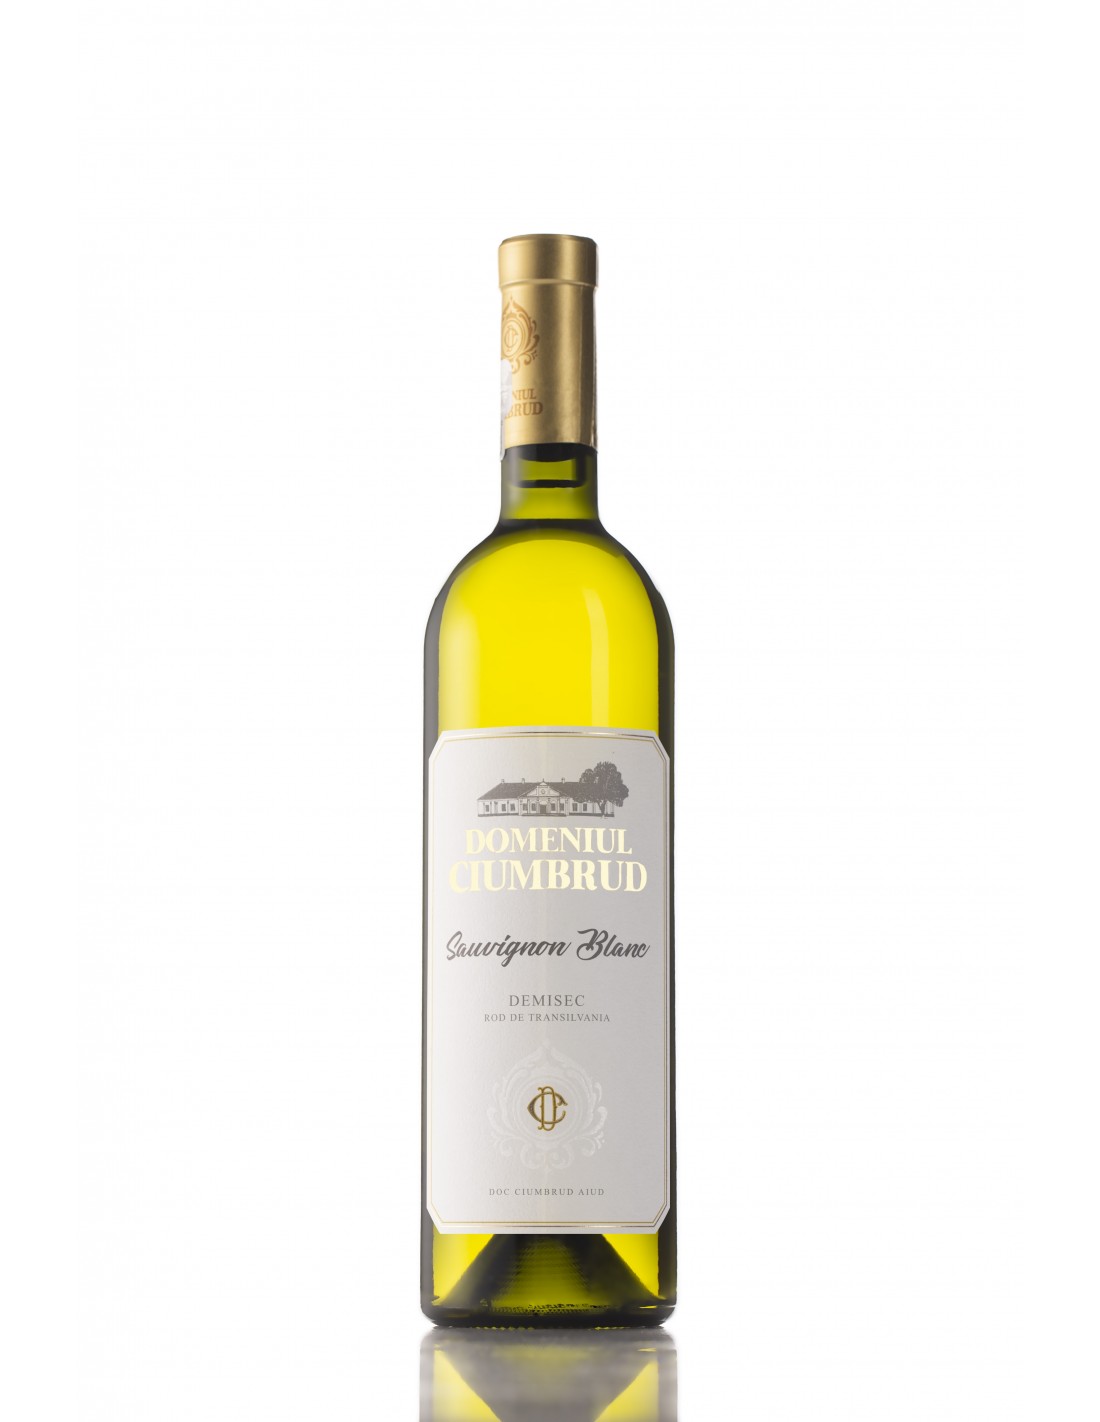 Vin alb demisec, Sauvignon Blanc, Domeniul Ciumbrud, 12.5% alc., 0.75L, Romania alcooldiscount.ro